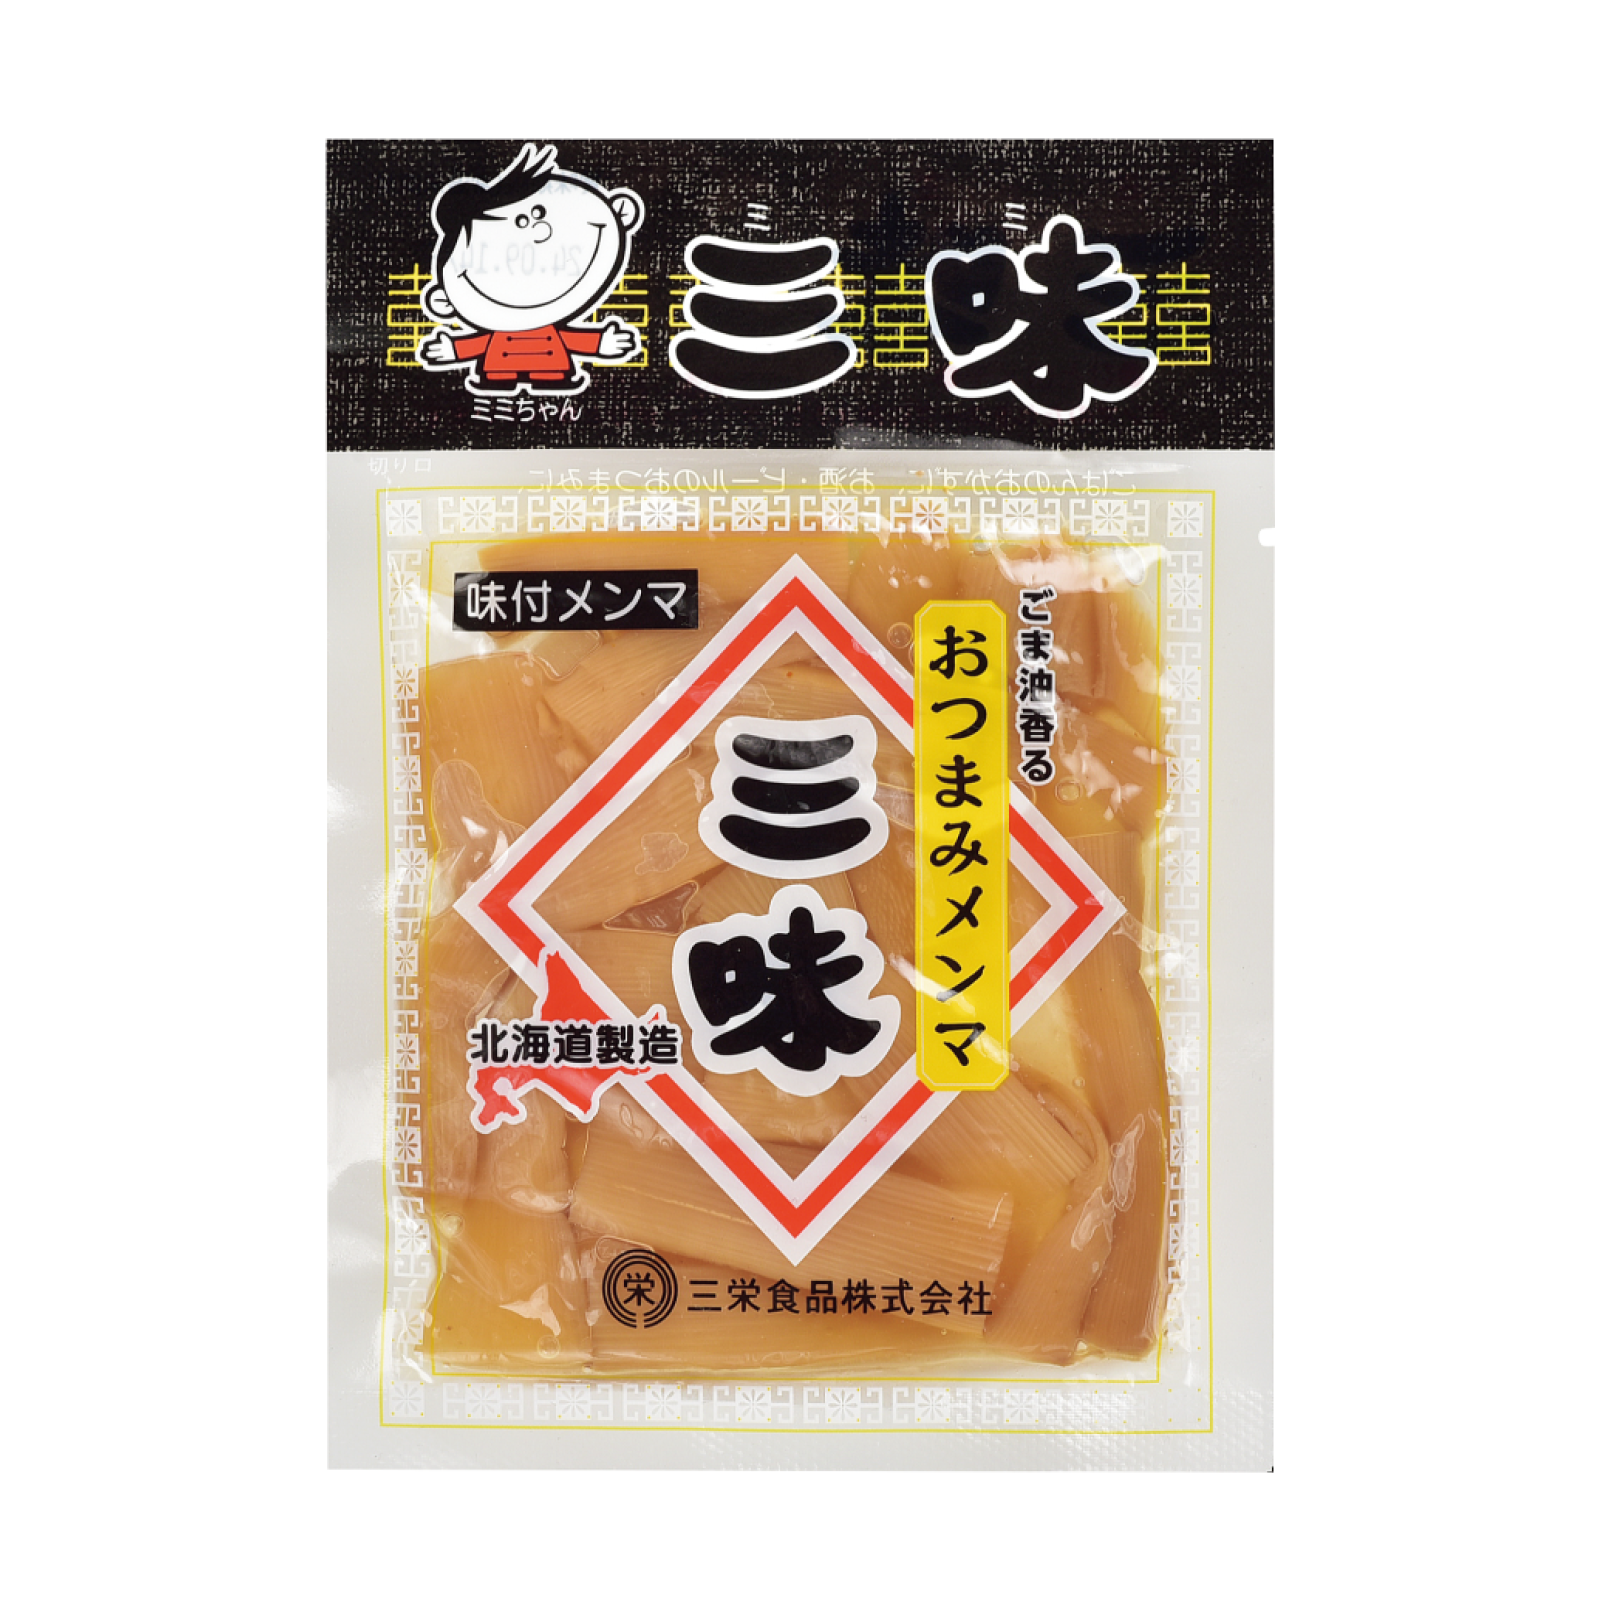 三栄味付メンマ三味 おつまみメンマ 55g